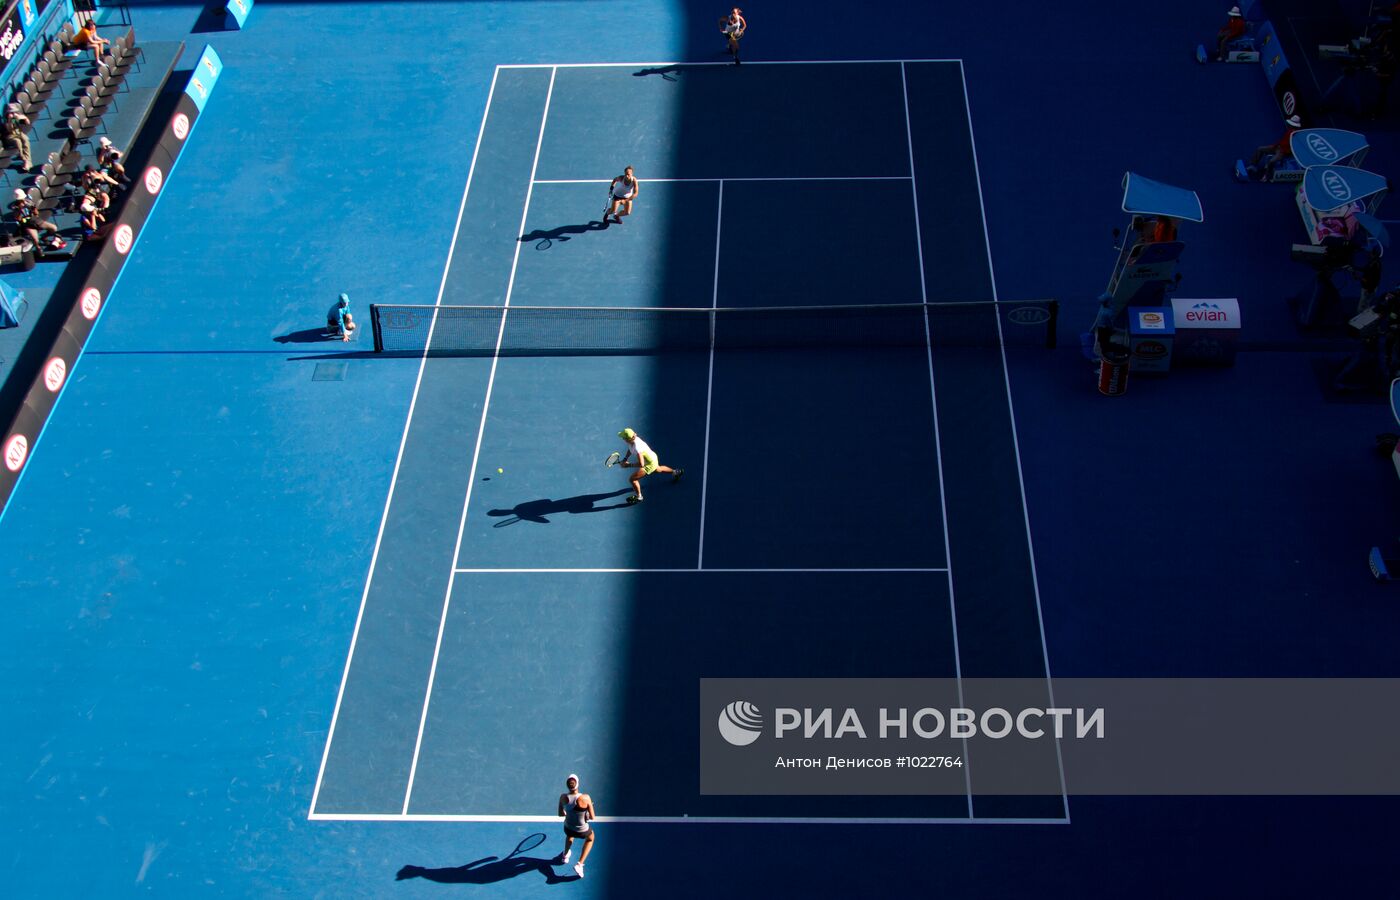 Теннис. Открытый чемпионат Австралии - 2012. Двенадцатый день